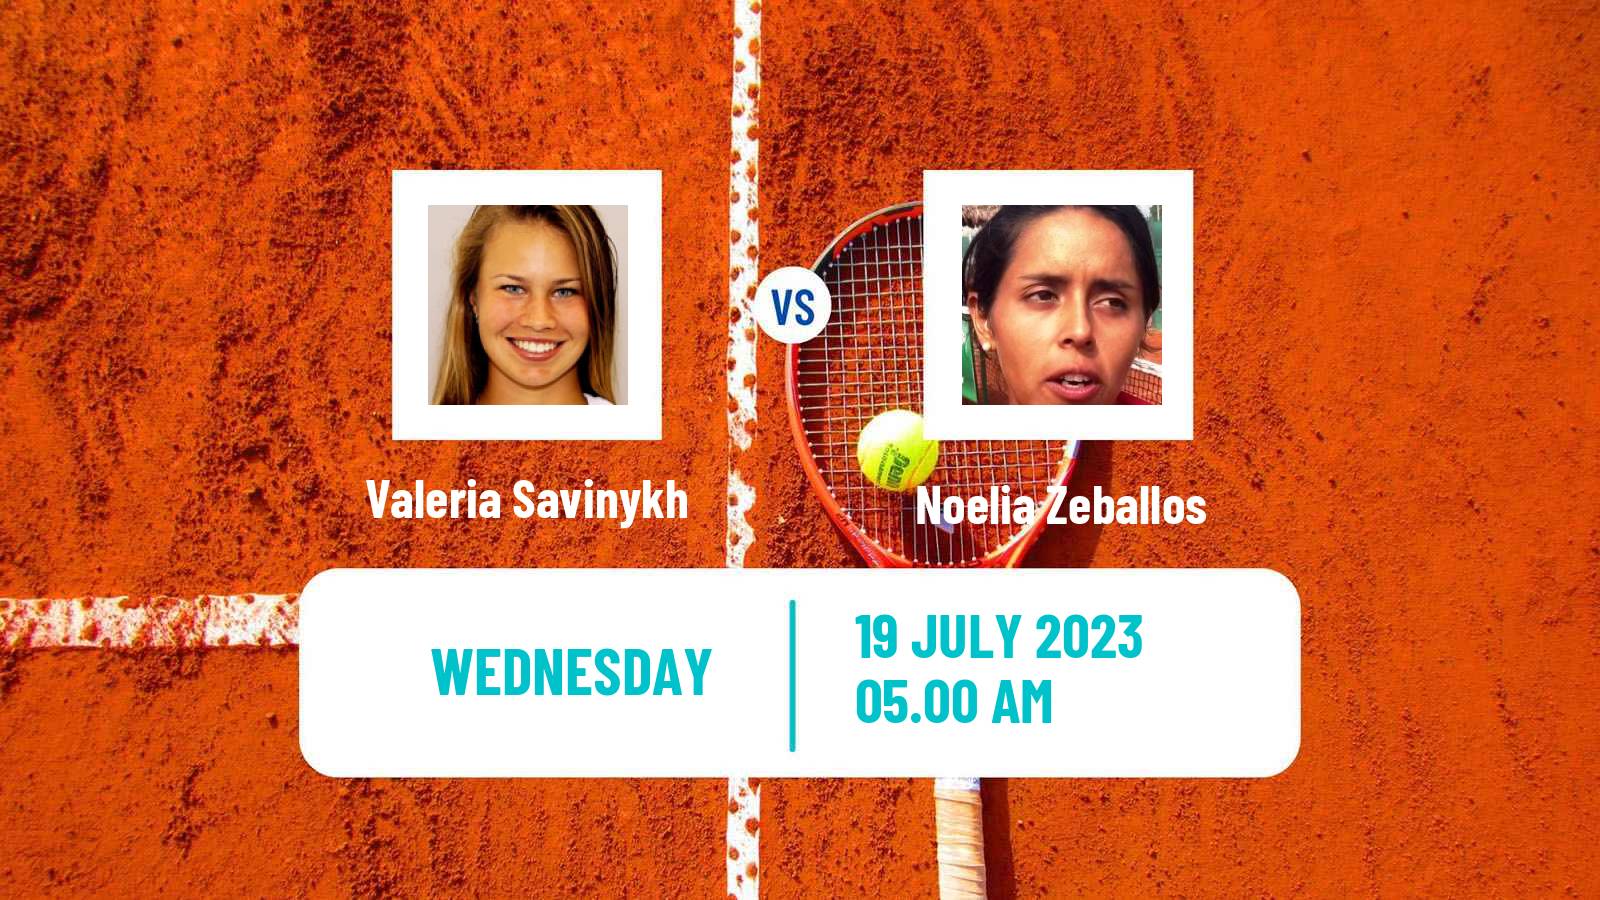 Tennis ITF W100 Vitoria Gasteiz Women Valeria Savinykh - Noelia Zeballos